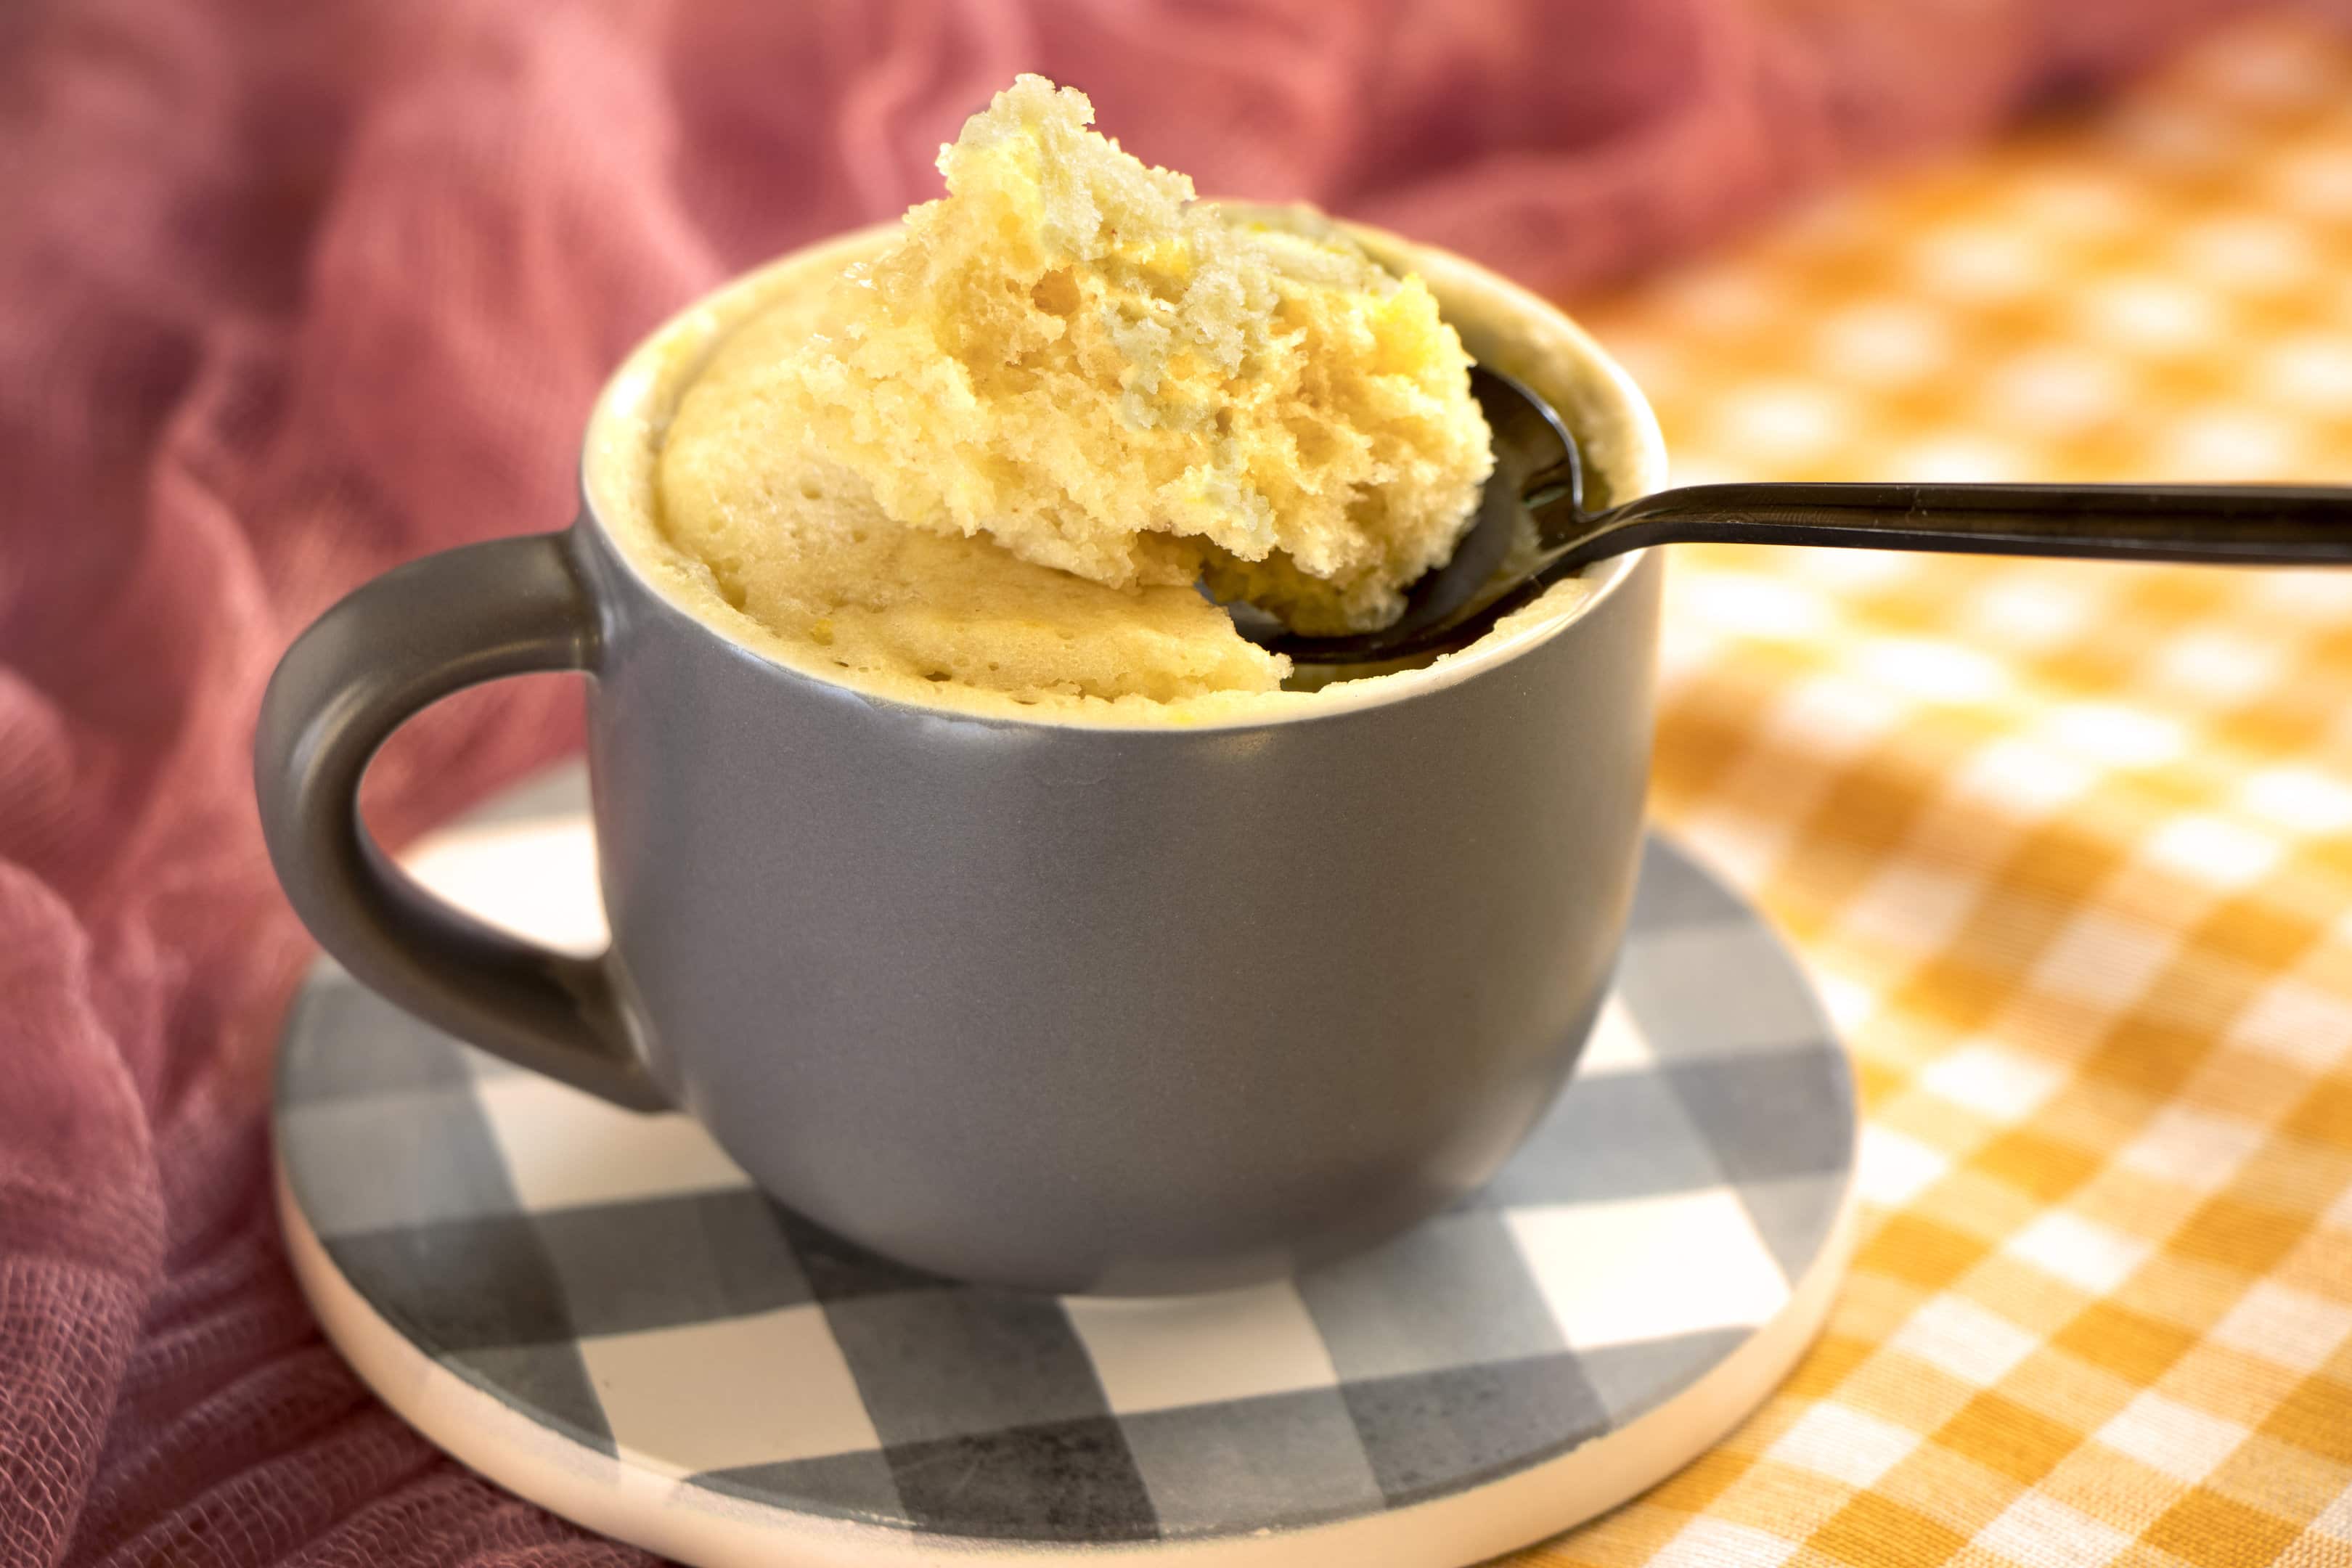 Recipe for vanilla cake in a mug, a quick dessert